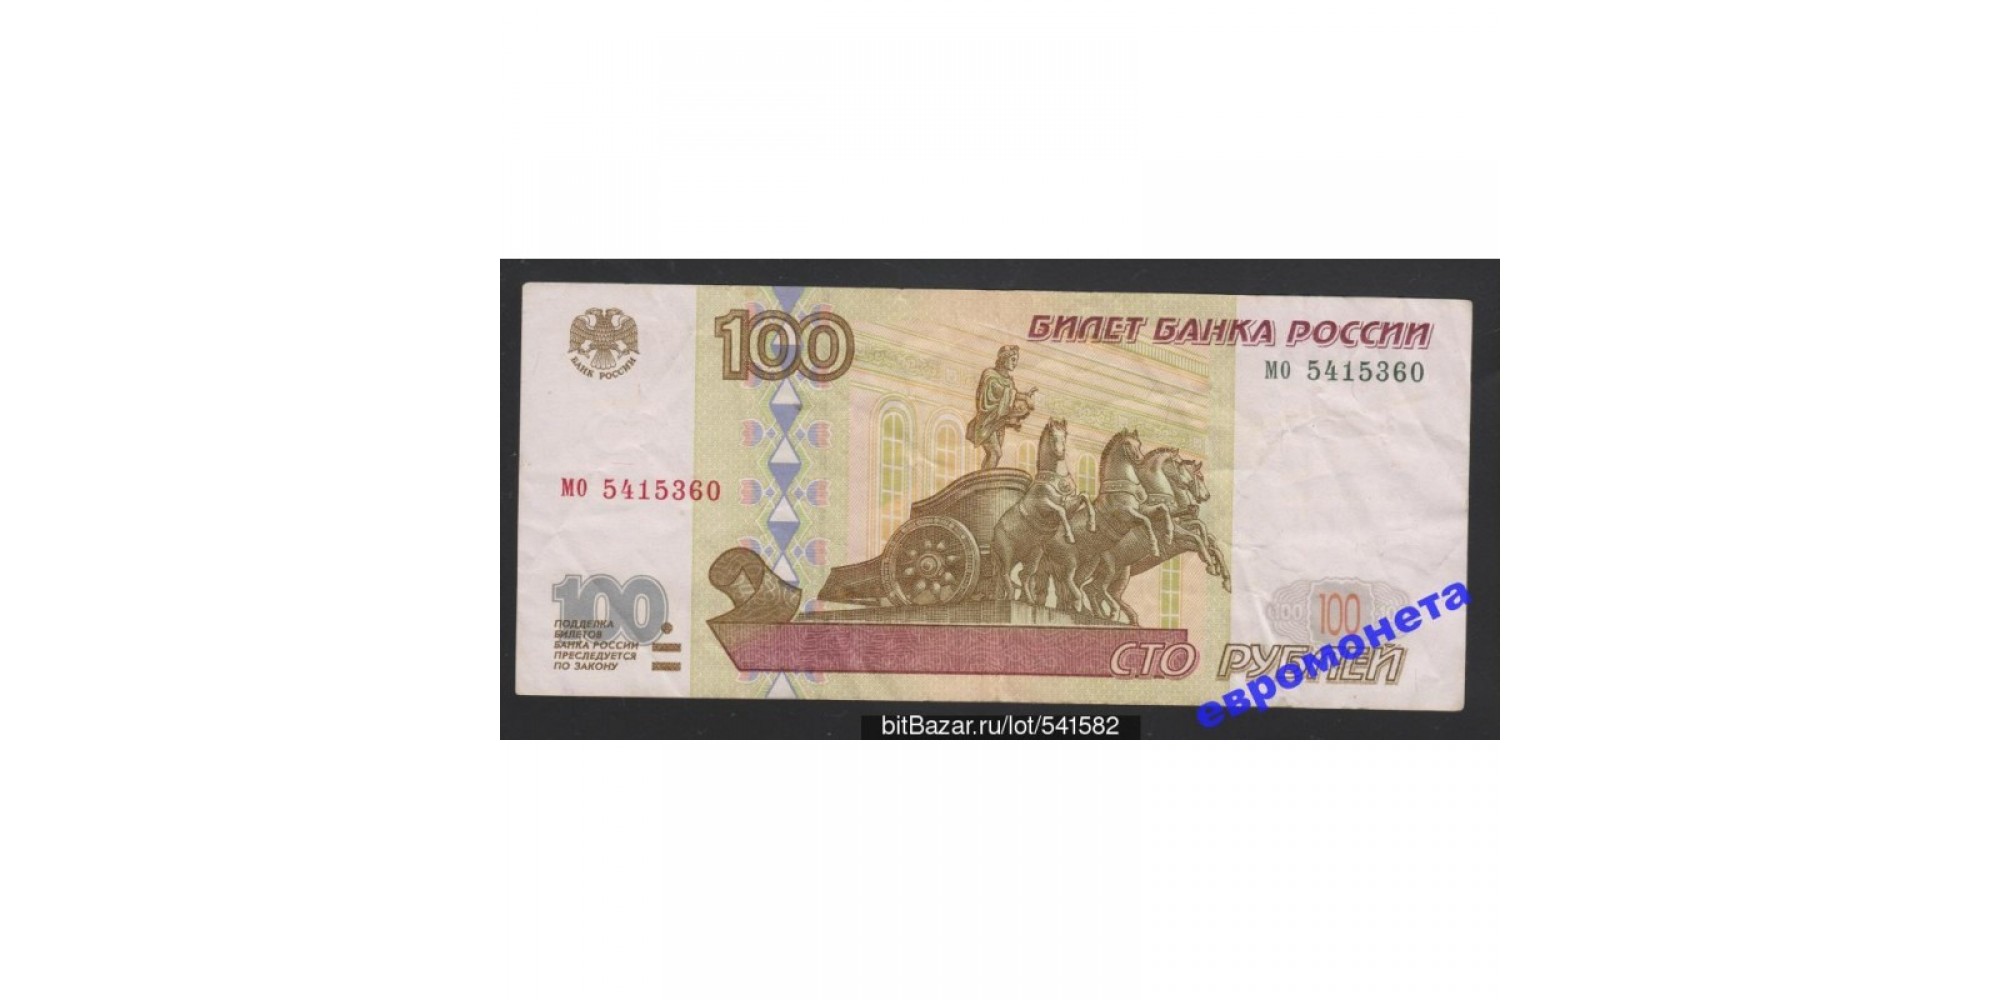 Россия 100 рублей 1997 год без модификации серия мо 5415360